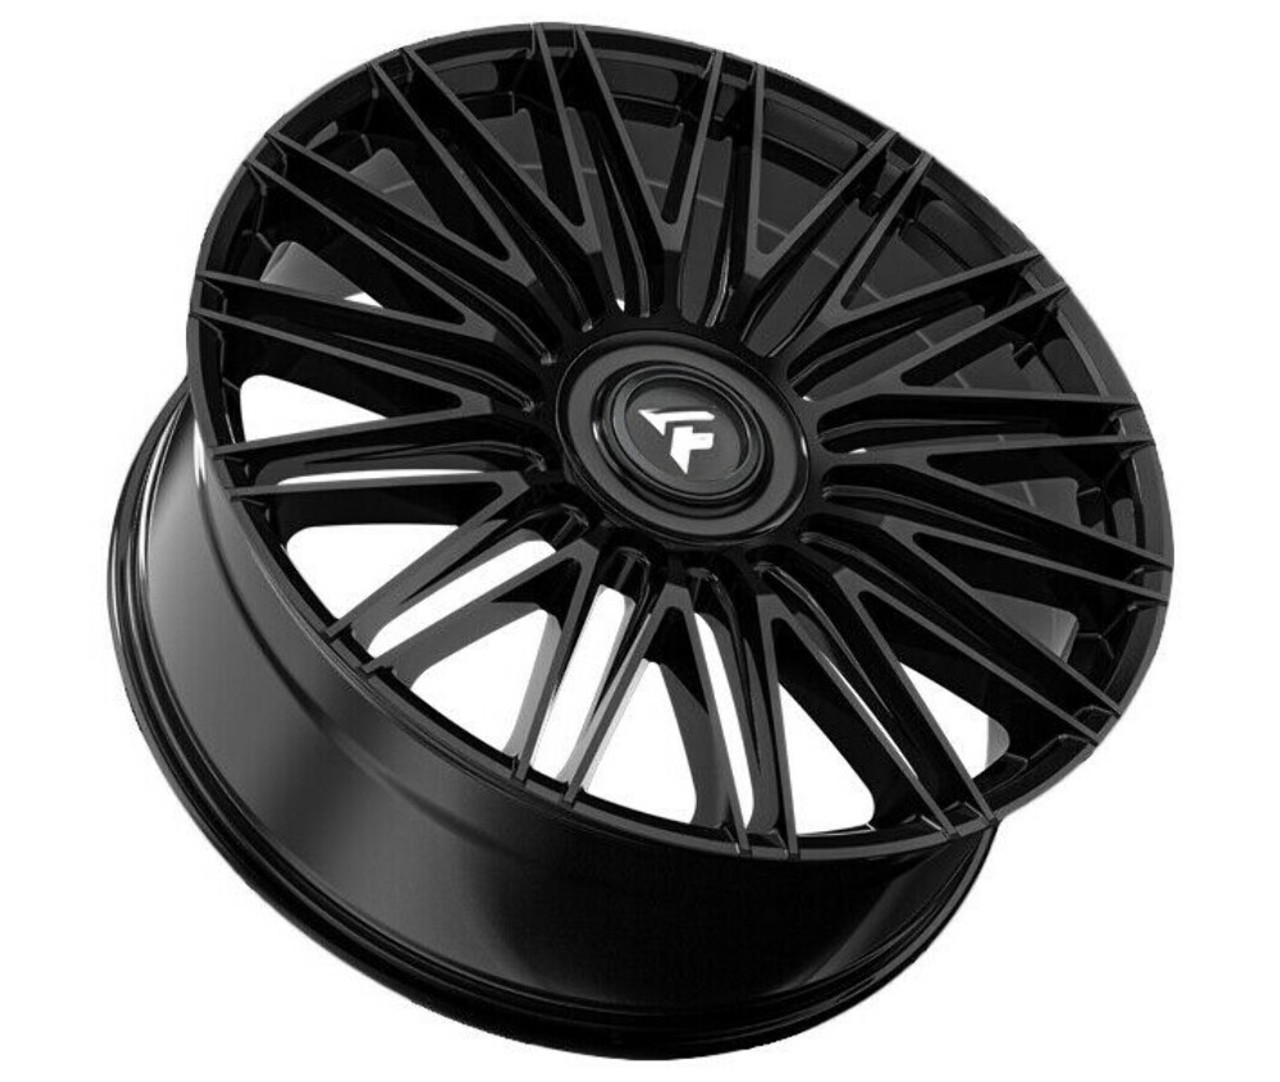 Set 4 22" Fittipaldi Street FS369B Gloss Black 22x9.5 Wheels 5x108 5x4.5 38mm